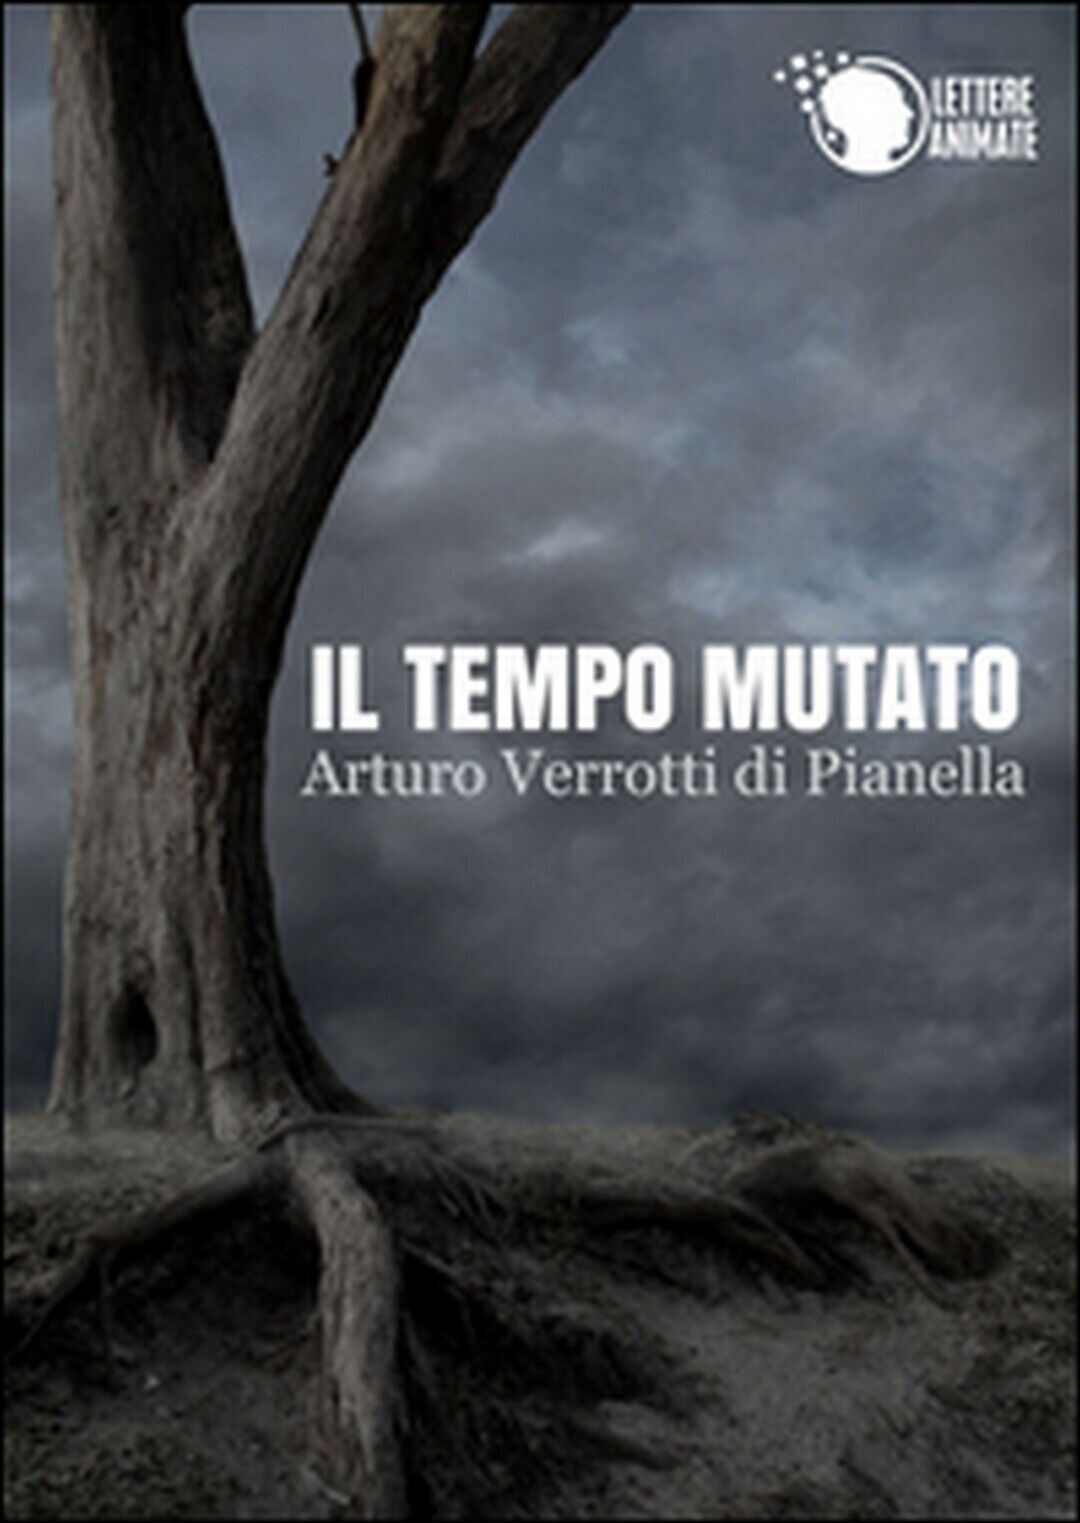 Il tempo mutato  di Arturo Verrotti Di Pianella,  2015,  Lettere Animate Editore